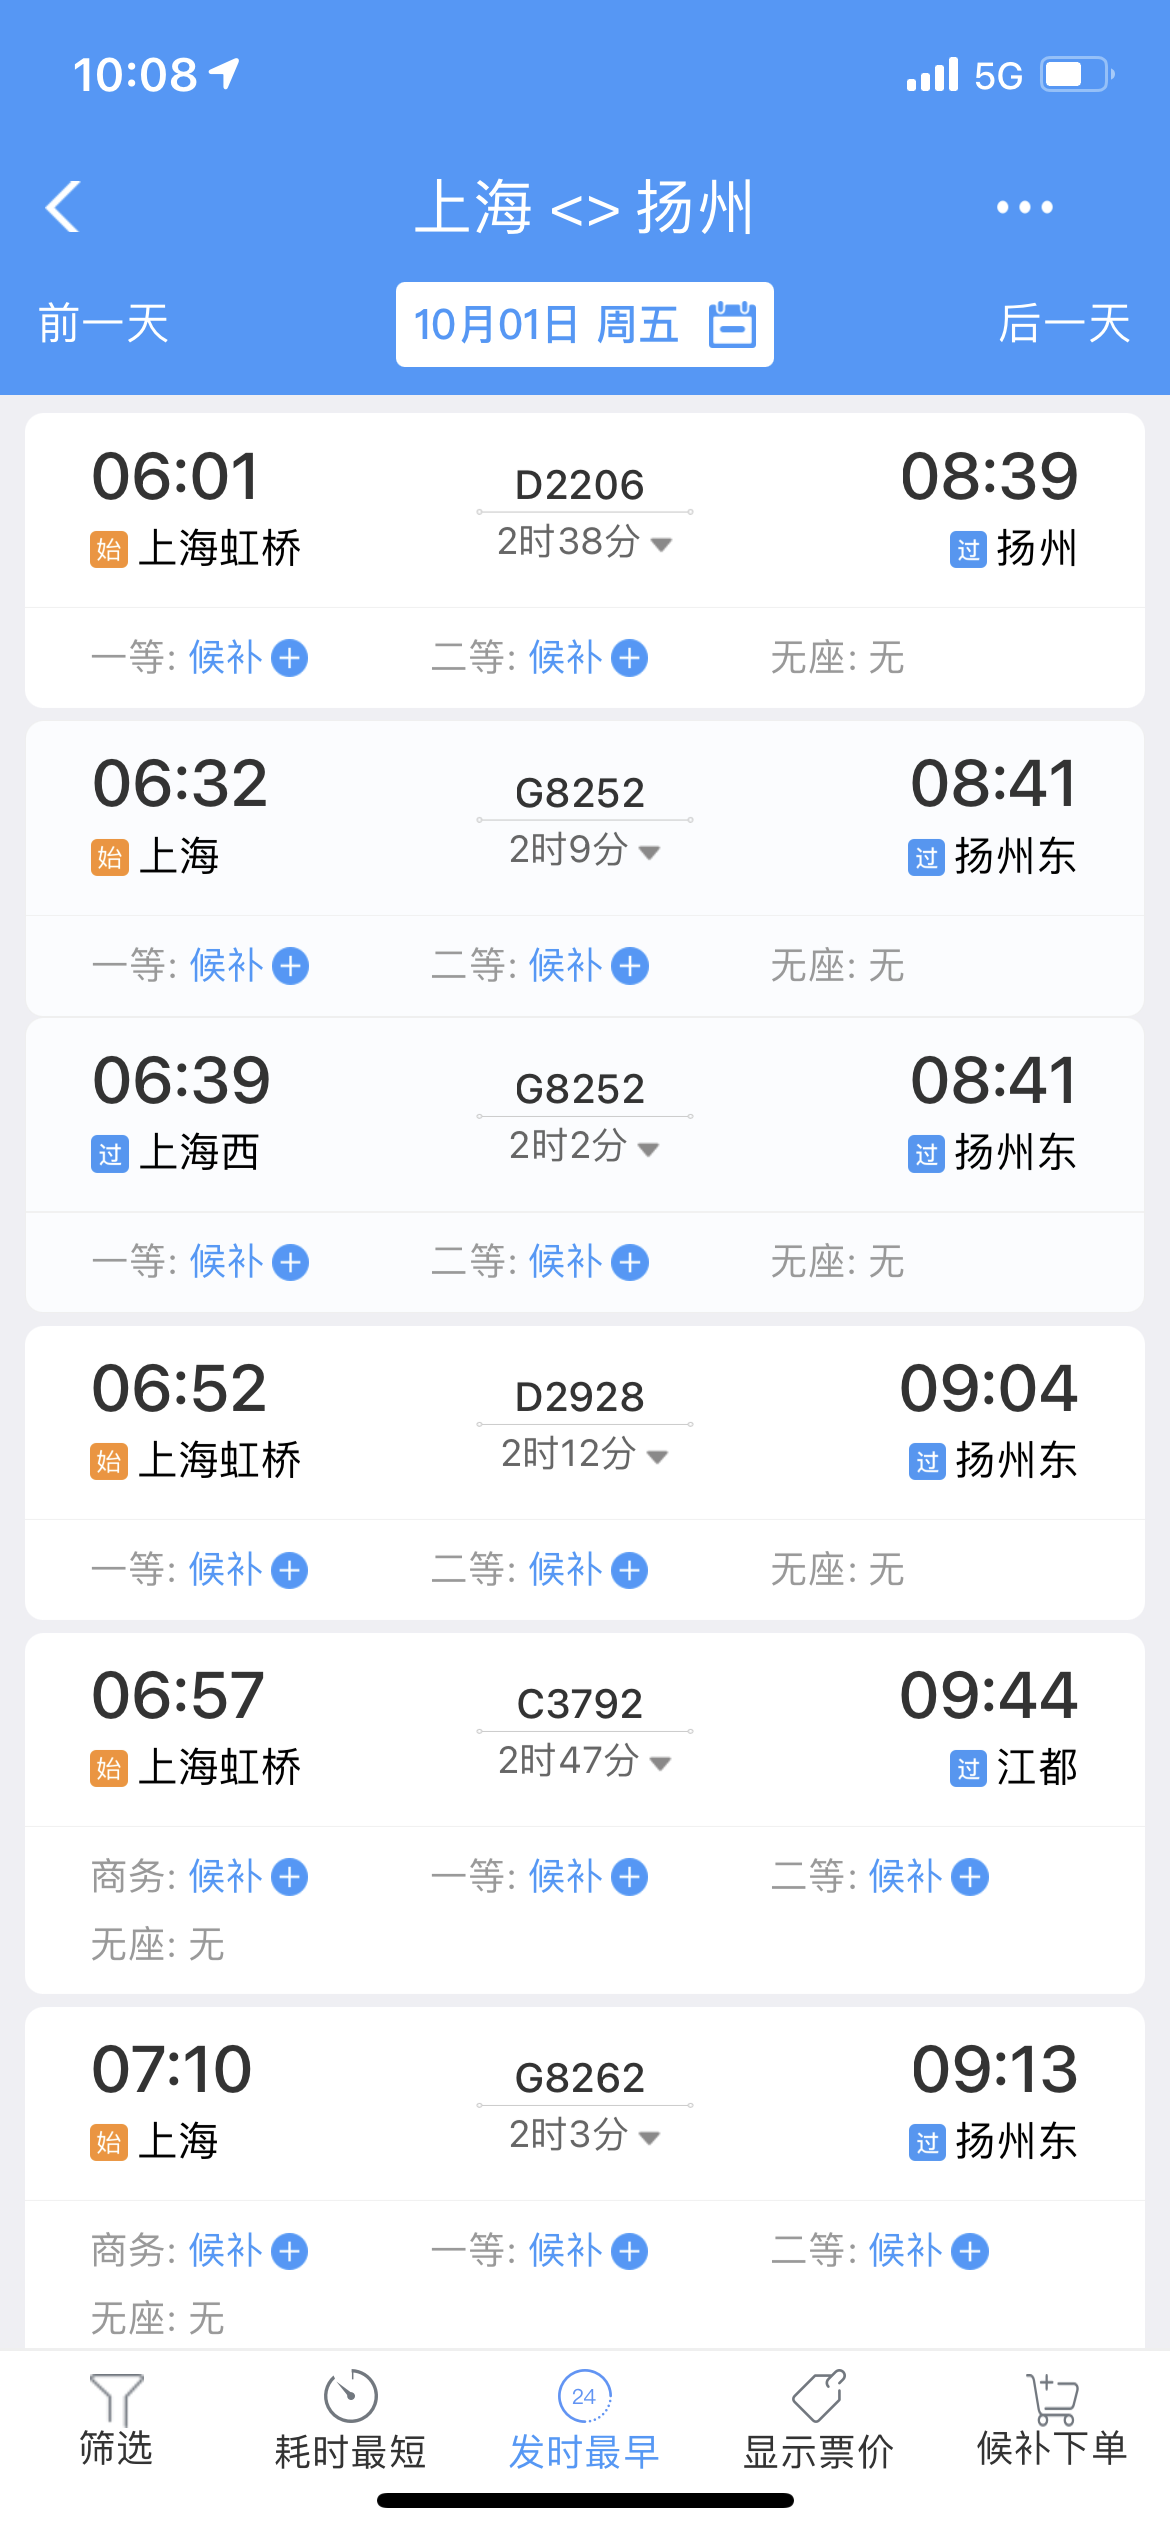 国庆长假首日上海往扬州杭州等短途方向火车票十分紧张